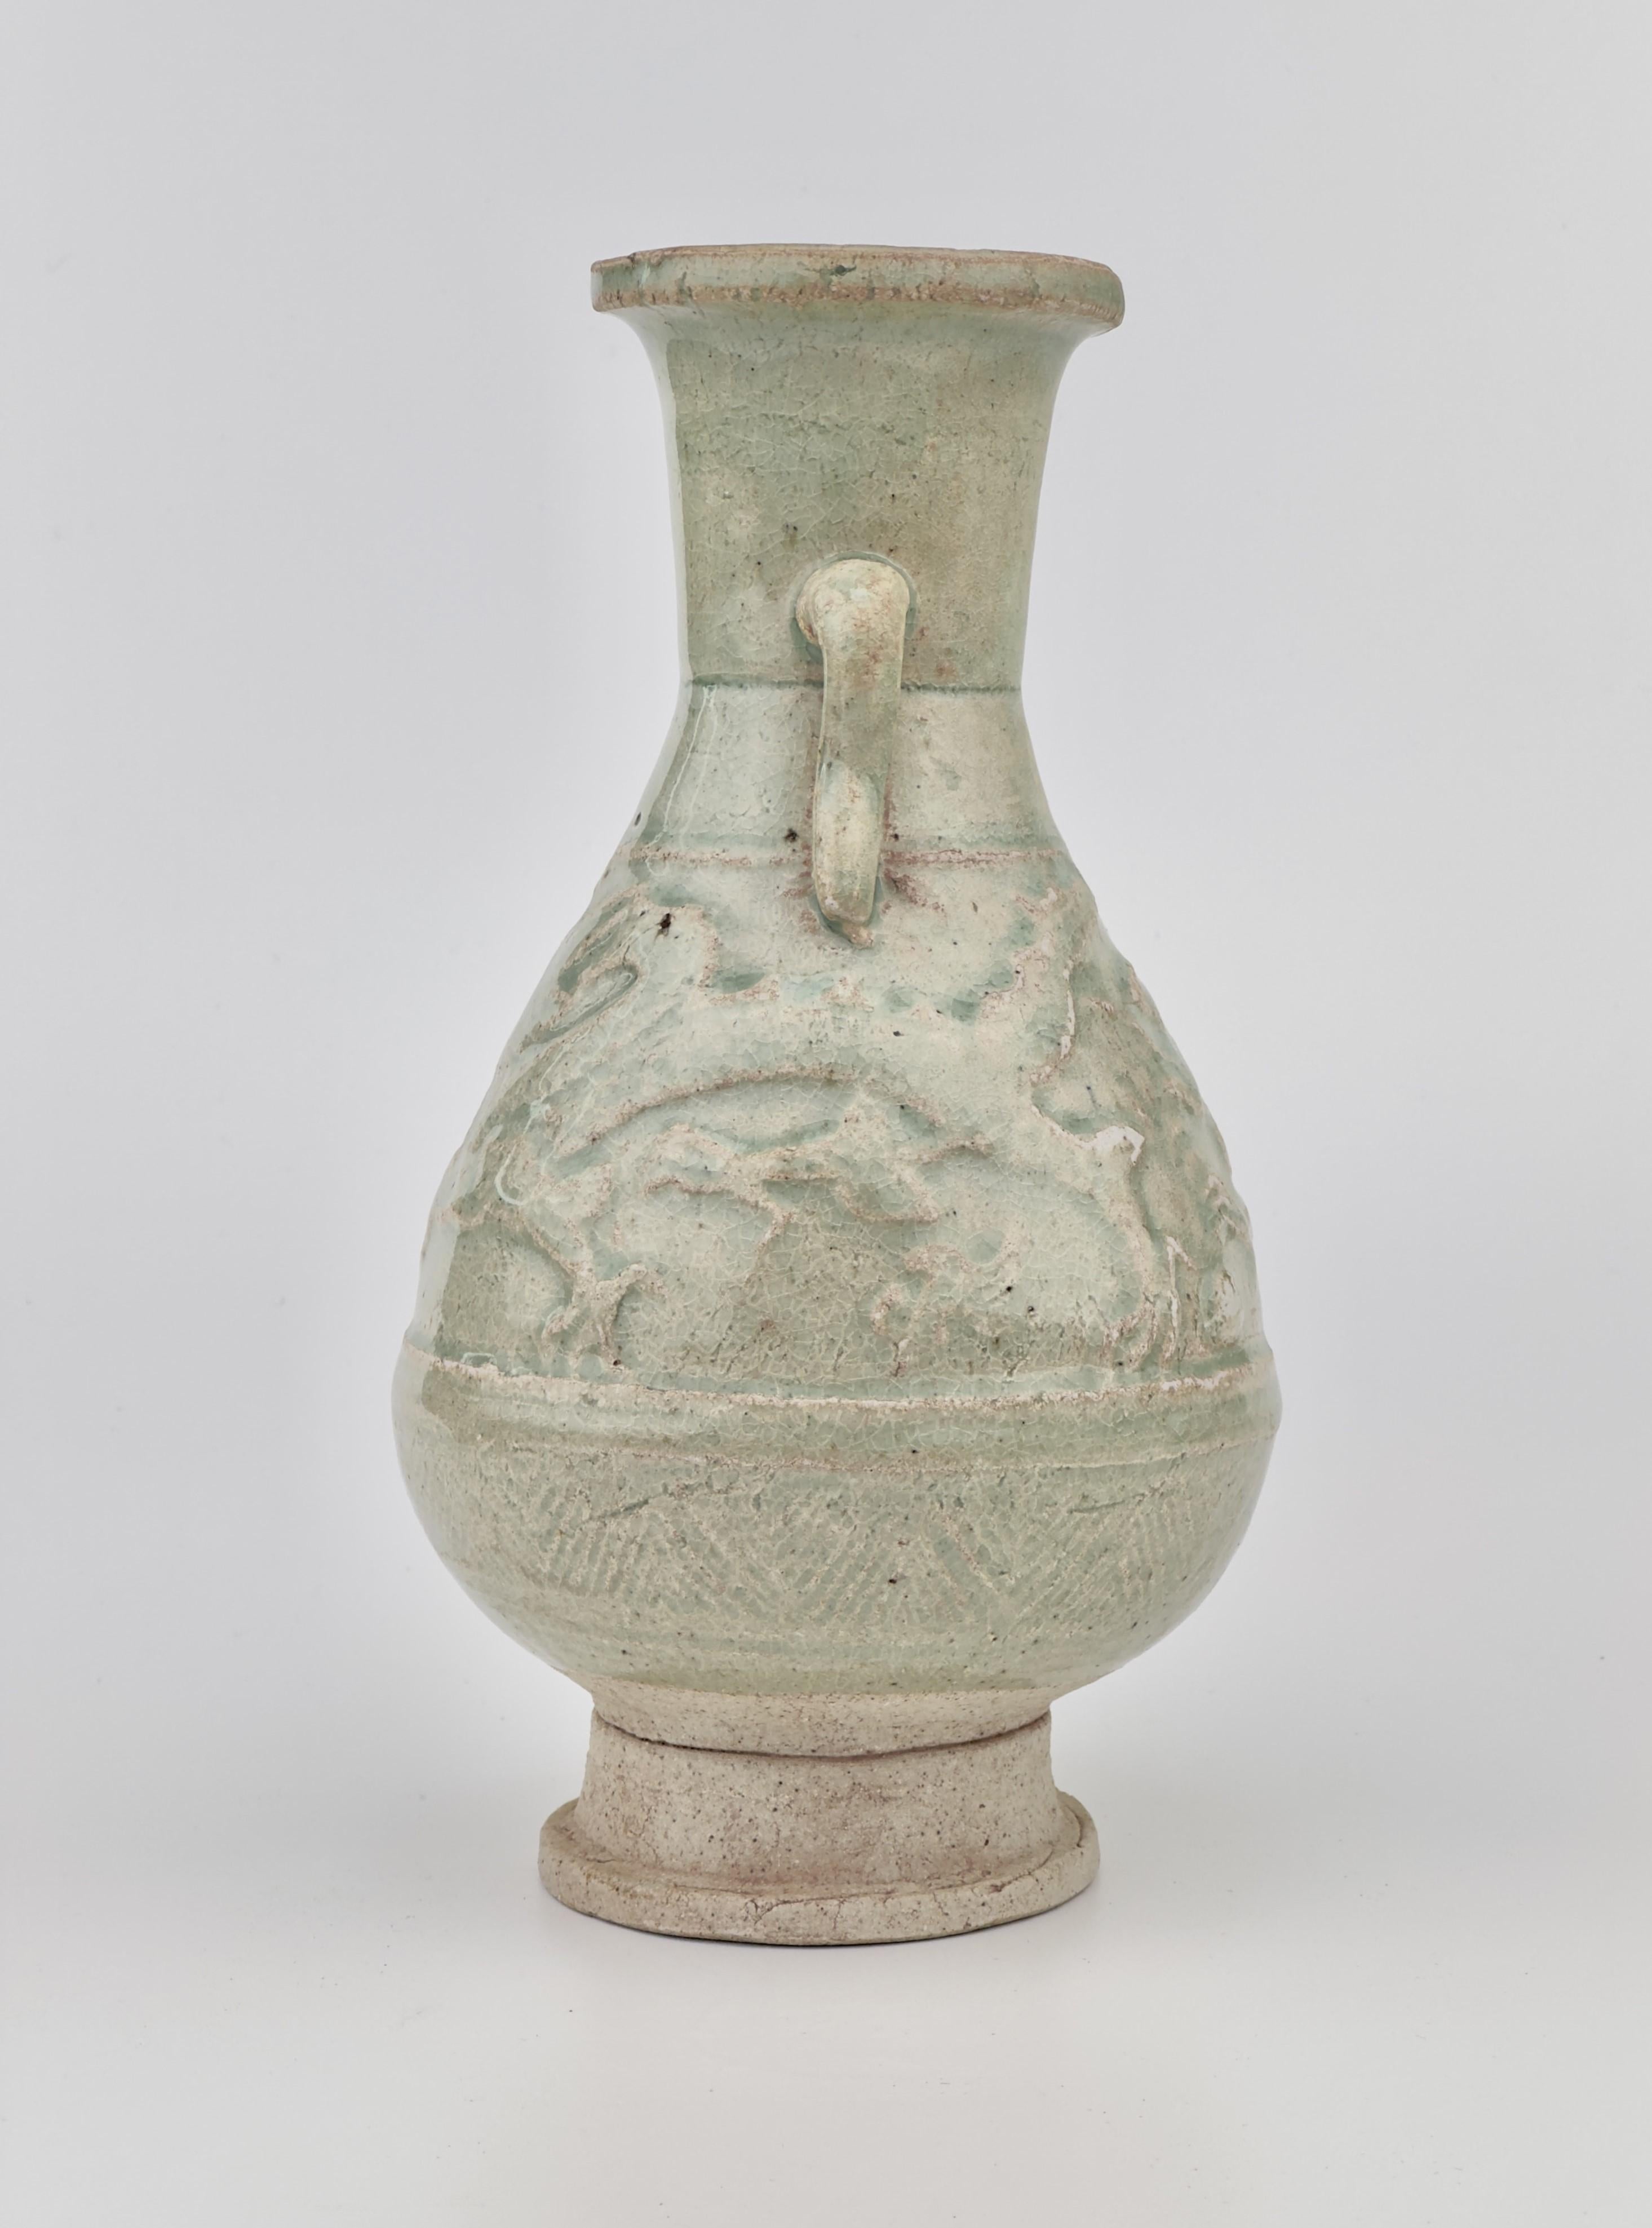 Diese Vase ist aus einer Art porösem, niedrig gebranntem Ton gefertigt und mit einer Craquelé-Glasur versehen. Sie hat Ähnlichkeit mit den berühmten Grabvasen und -deckeln, die mit aufgesetzten Dekorationen verziert sind.

Zeitraum: